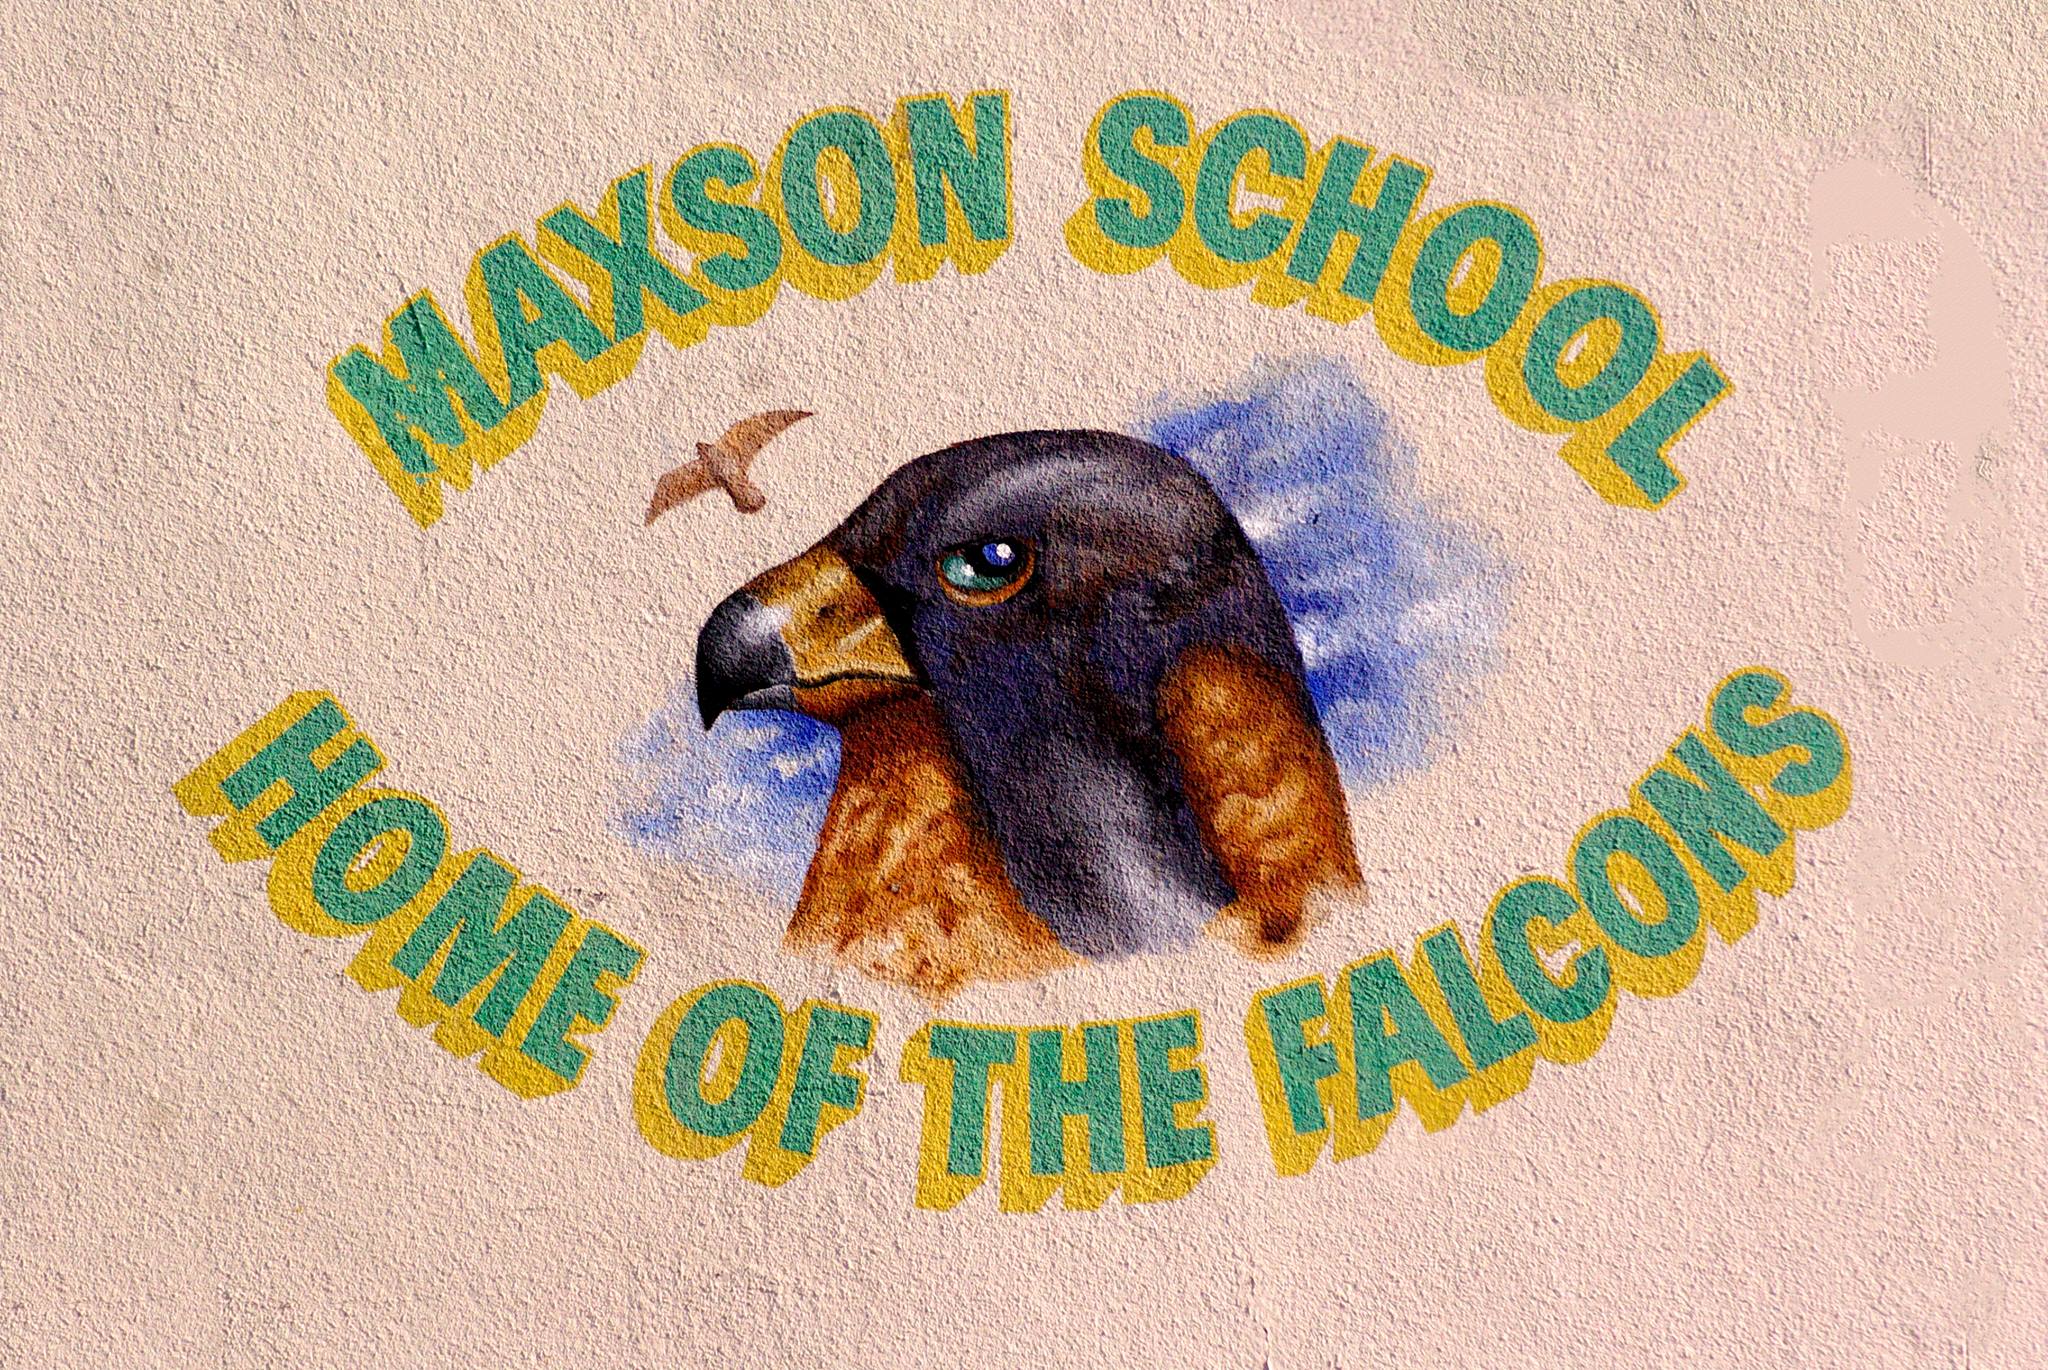 Maxson School (Mt. View)